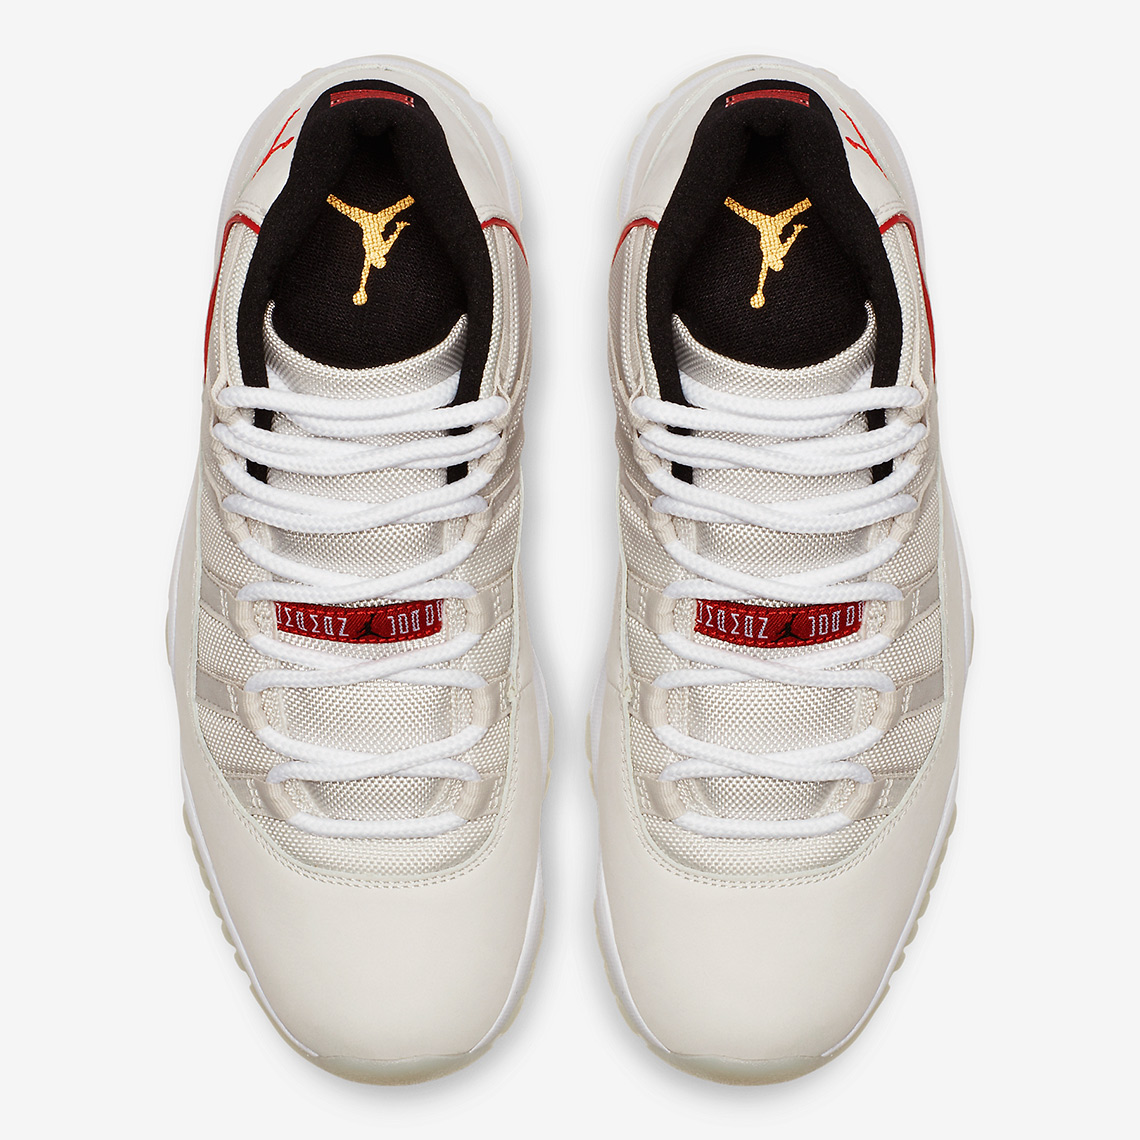 Jordan 11 Platinum Tint 378037-016 Release Date | SneakerNews.com